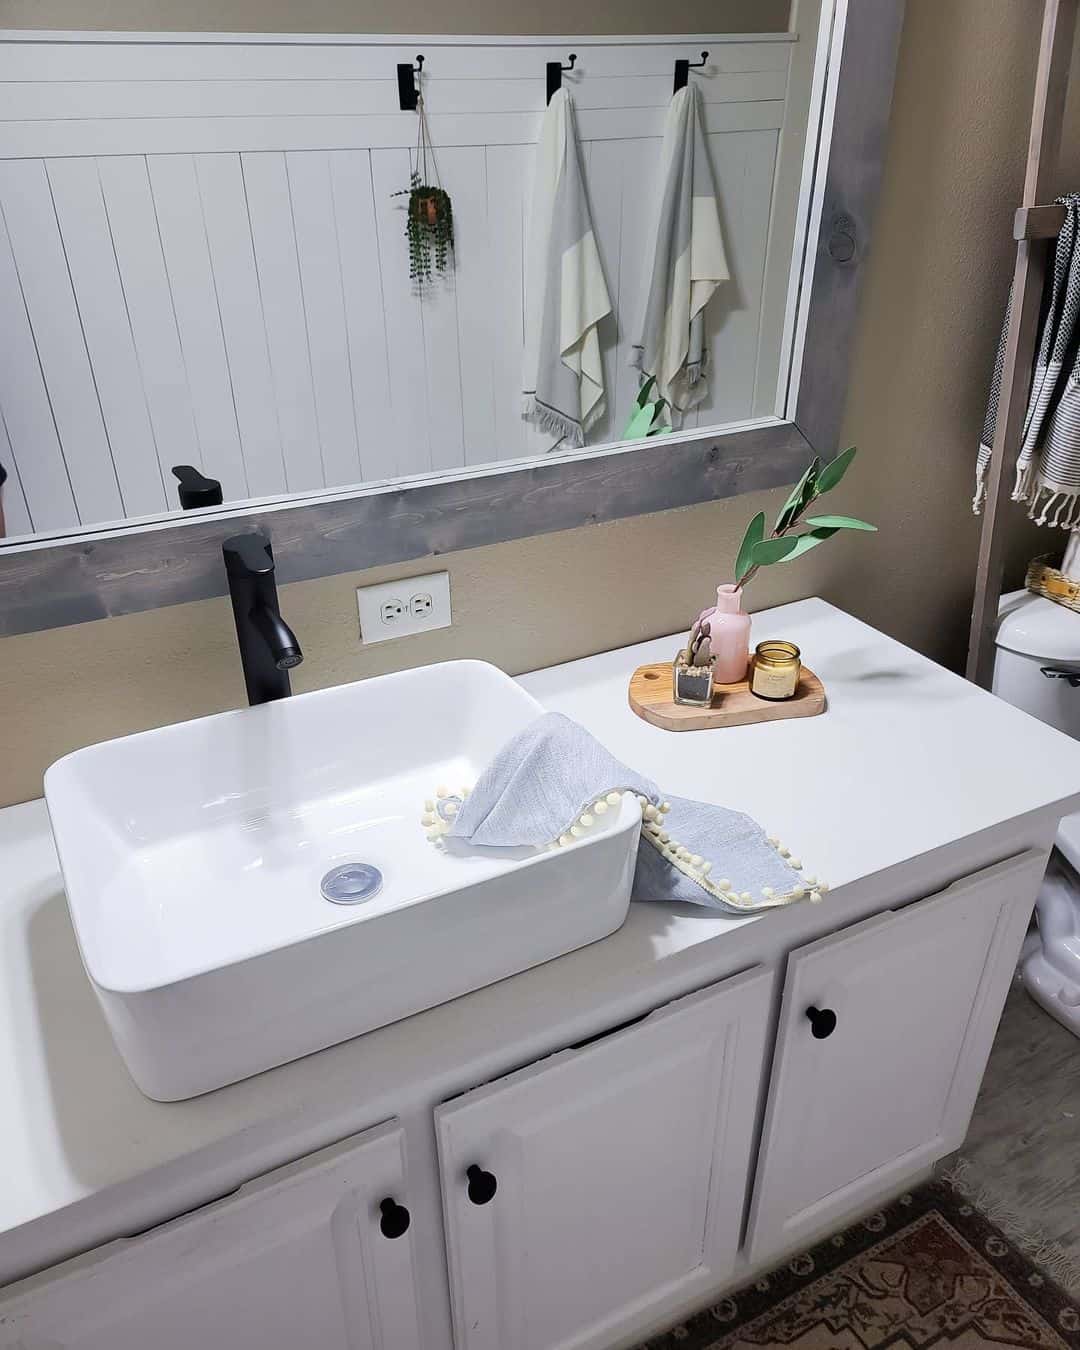 Bathroom countertop ideas: 10 bathroom countertop updates